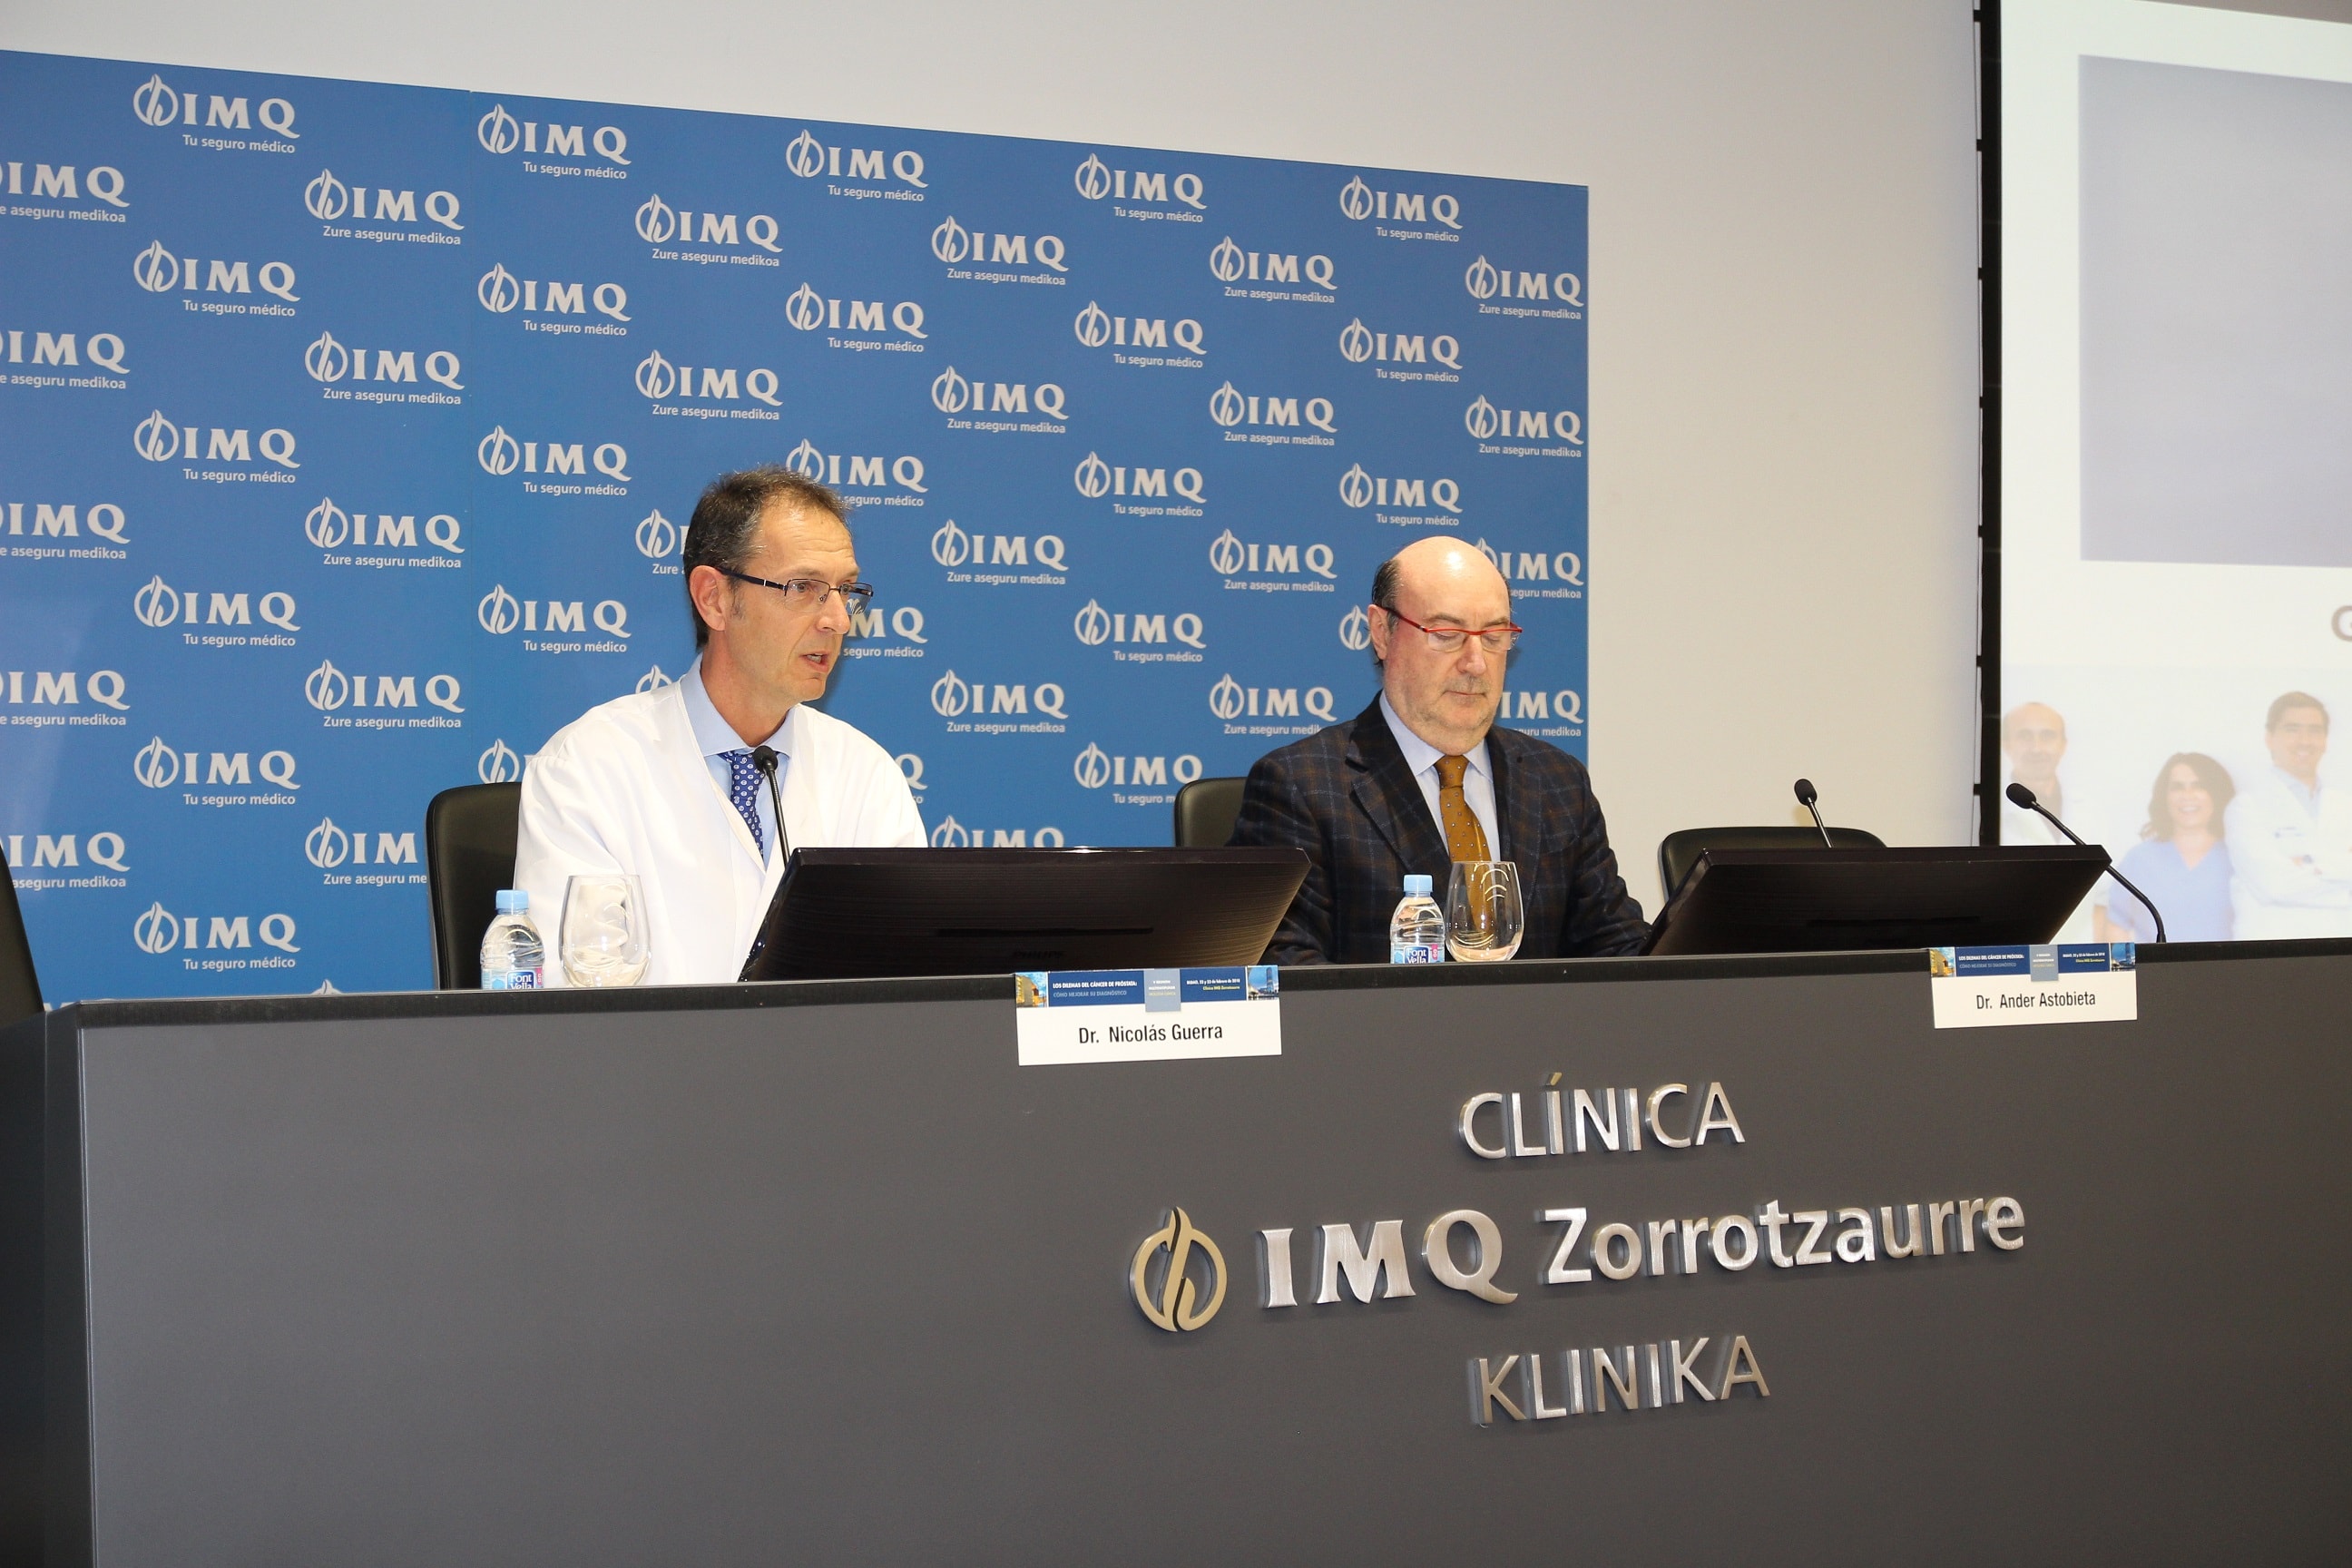 La clínica IMQ Zorrotzaurre, primera en Europa en emplear ecografía en alta resolución frente al cáncer de próstata.